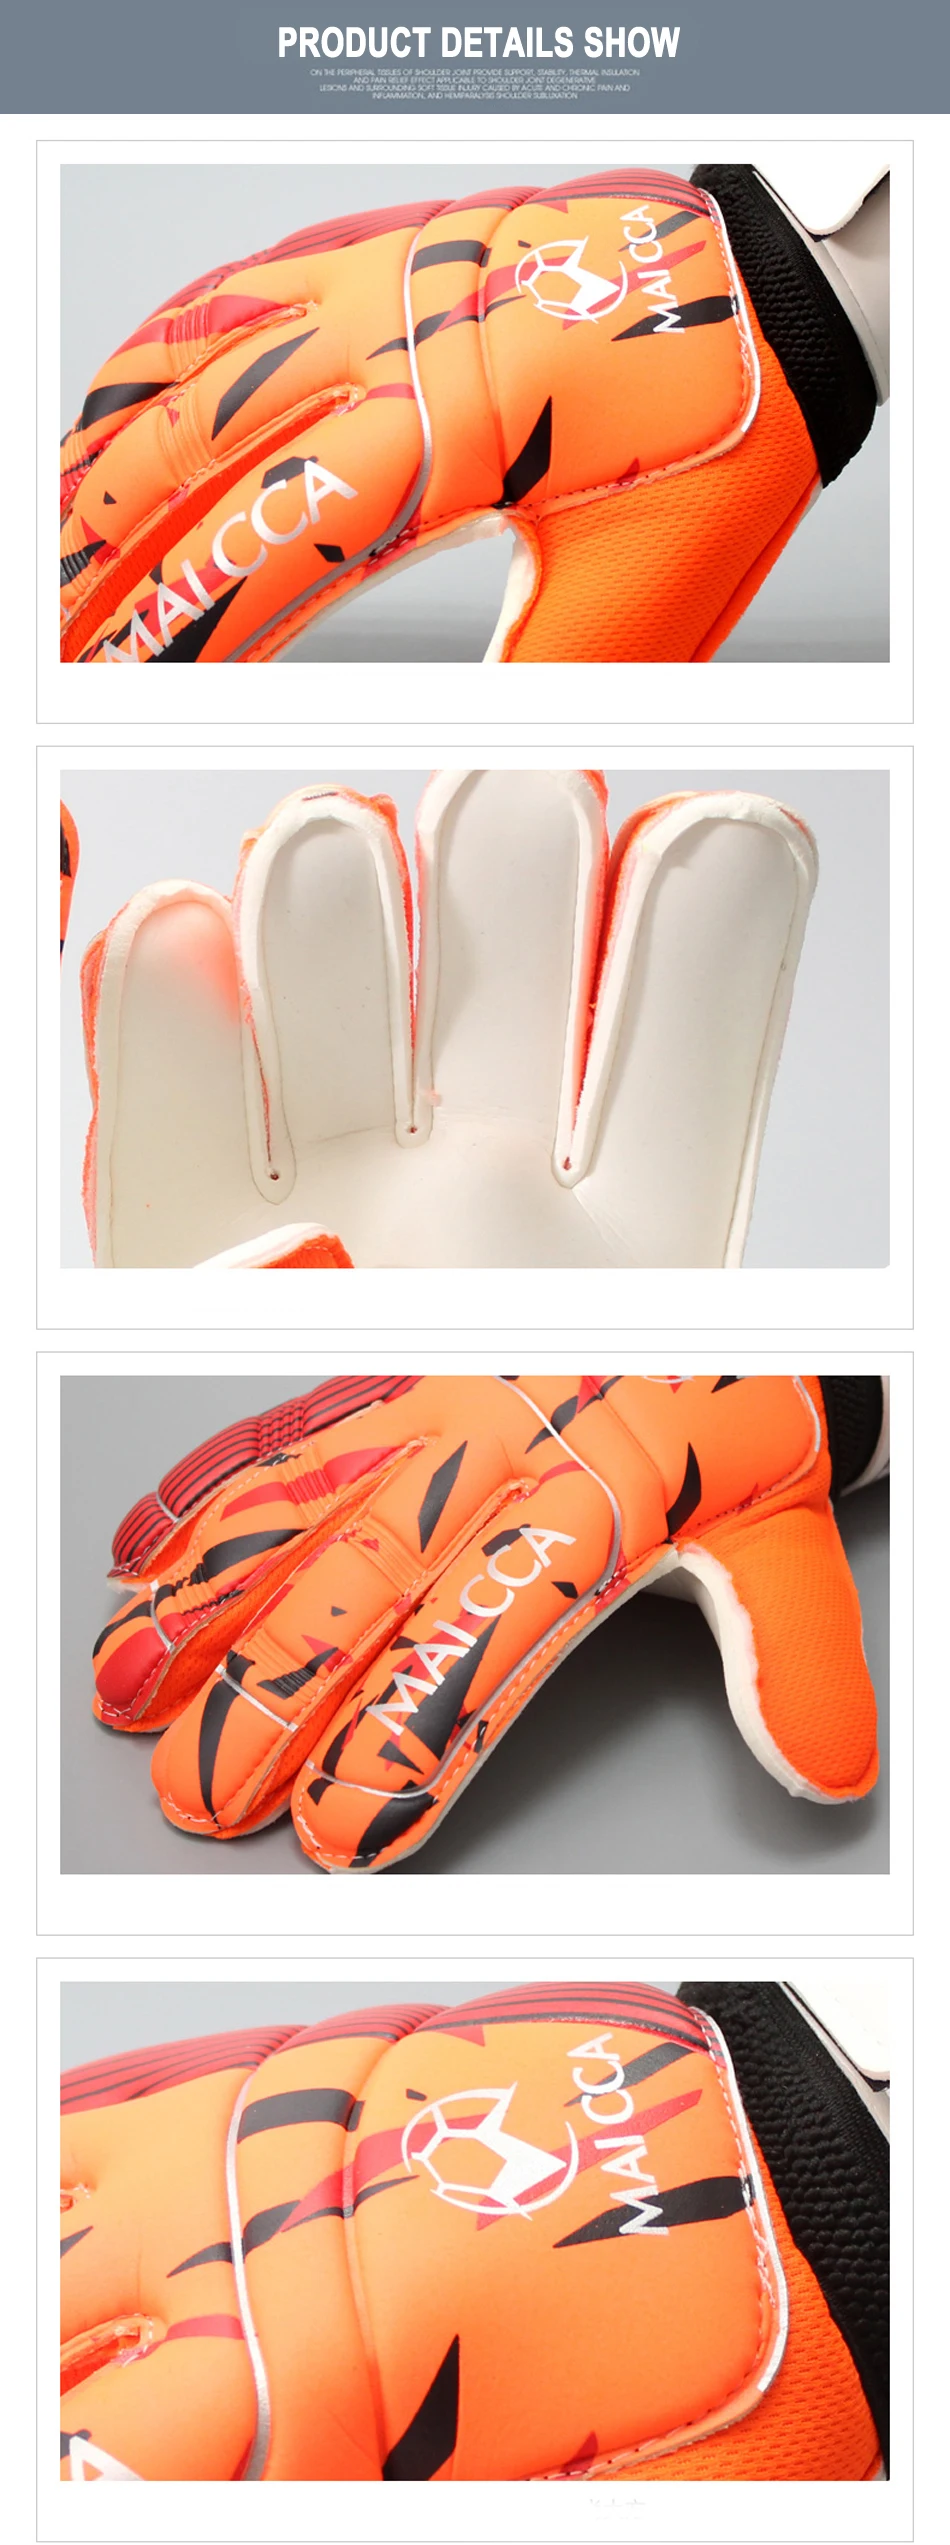 Профессиональные Футбольные вратарские перчатки Размер 8 9 10 для взрослых латексные Вратарские Перчатки спортивные